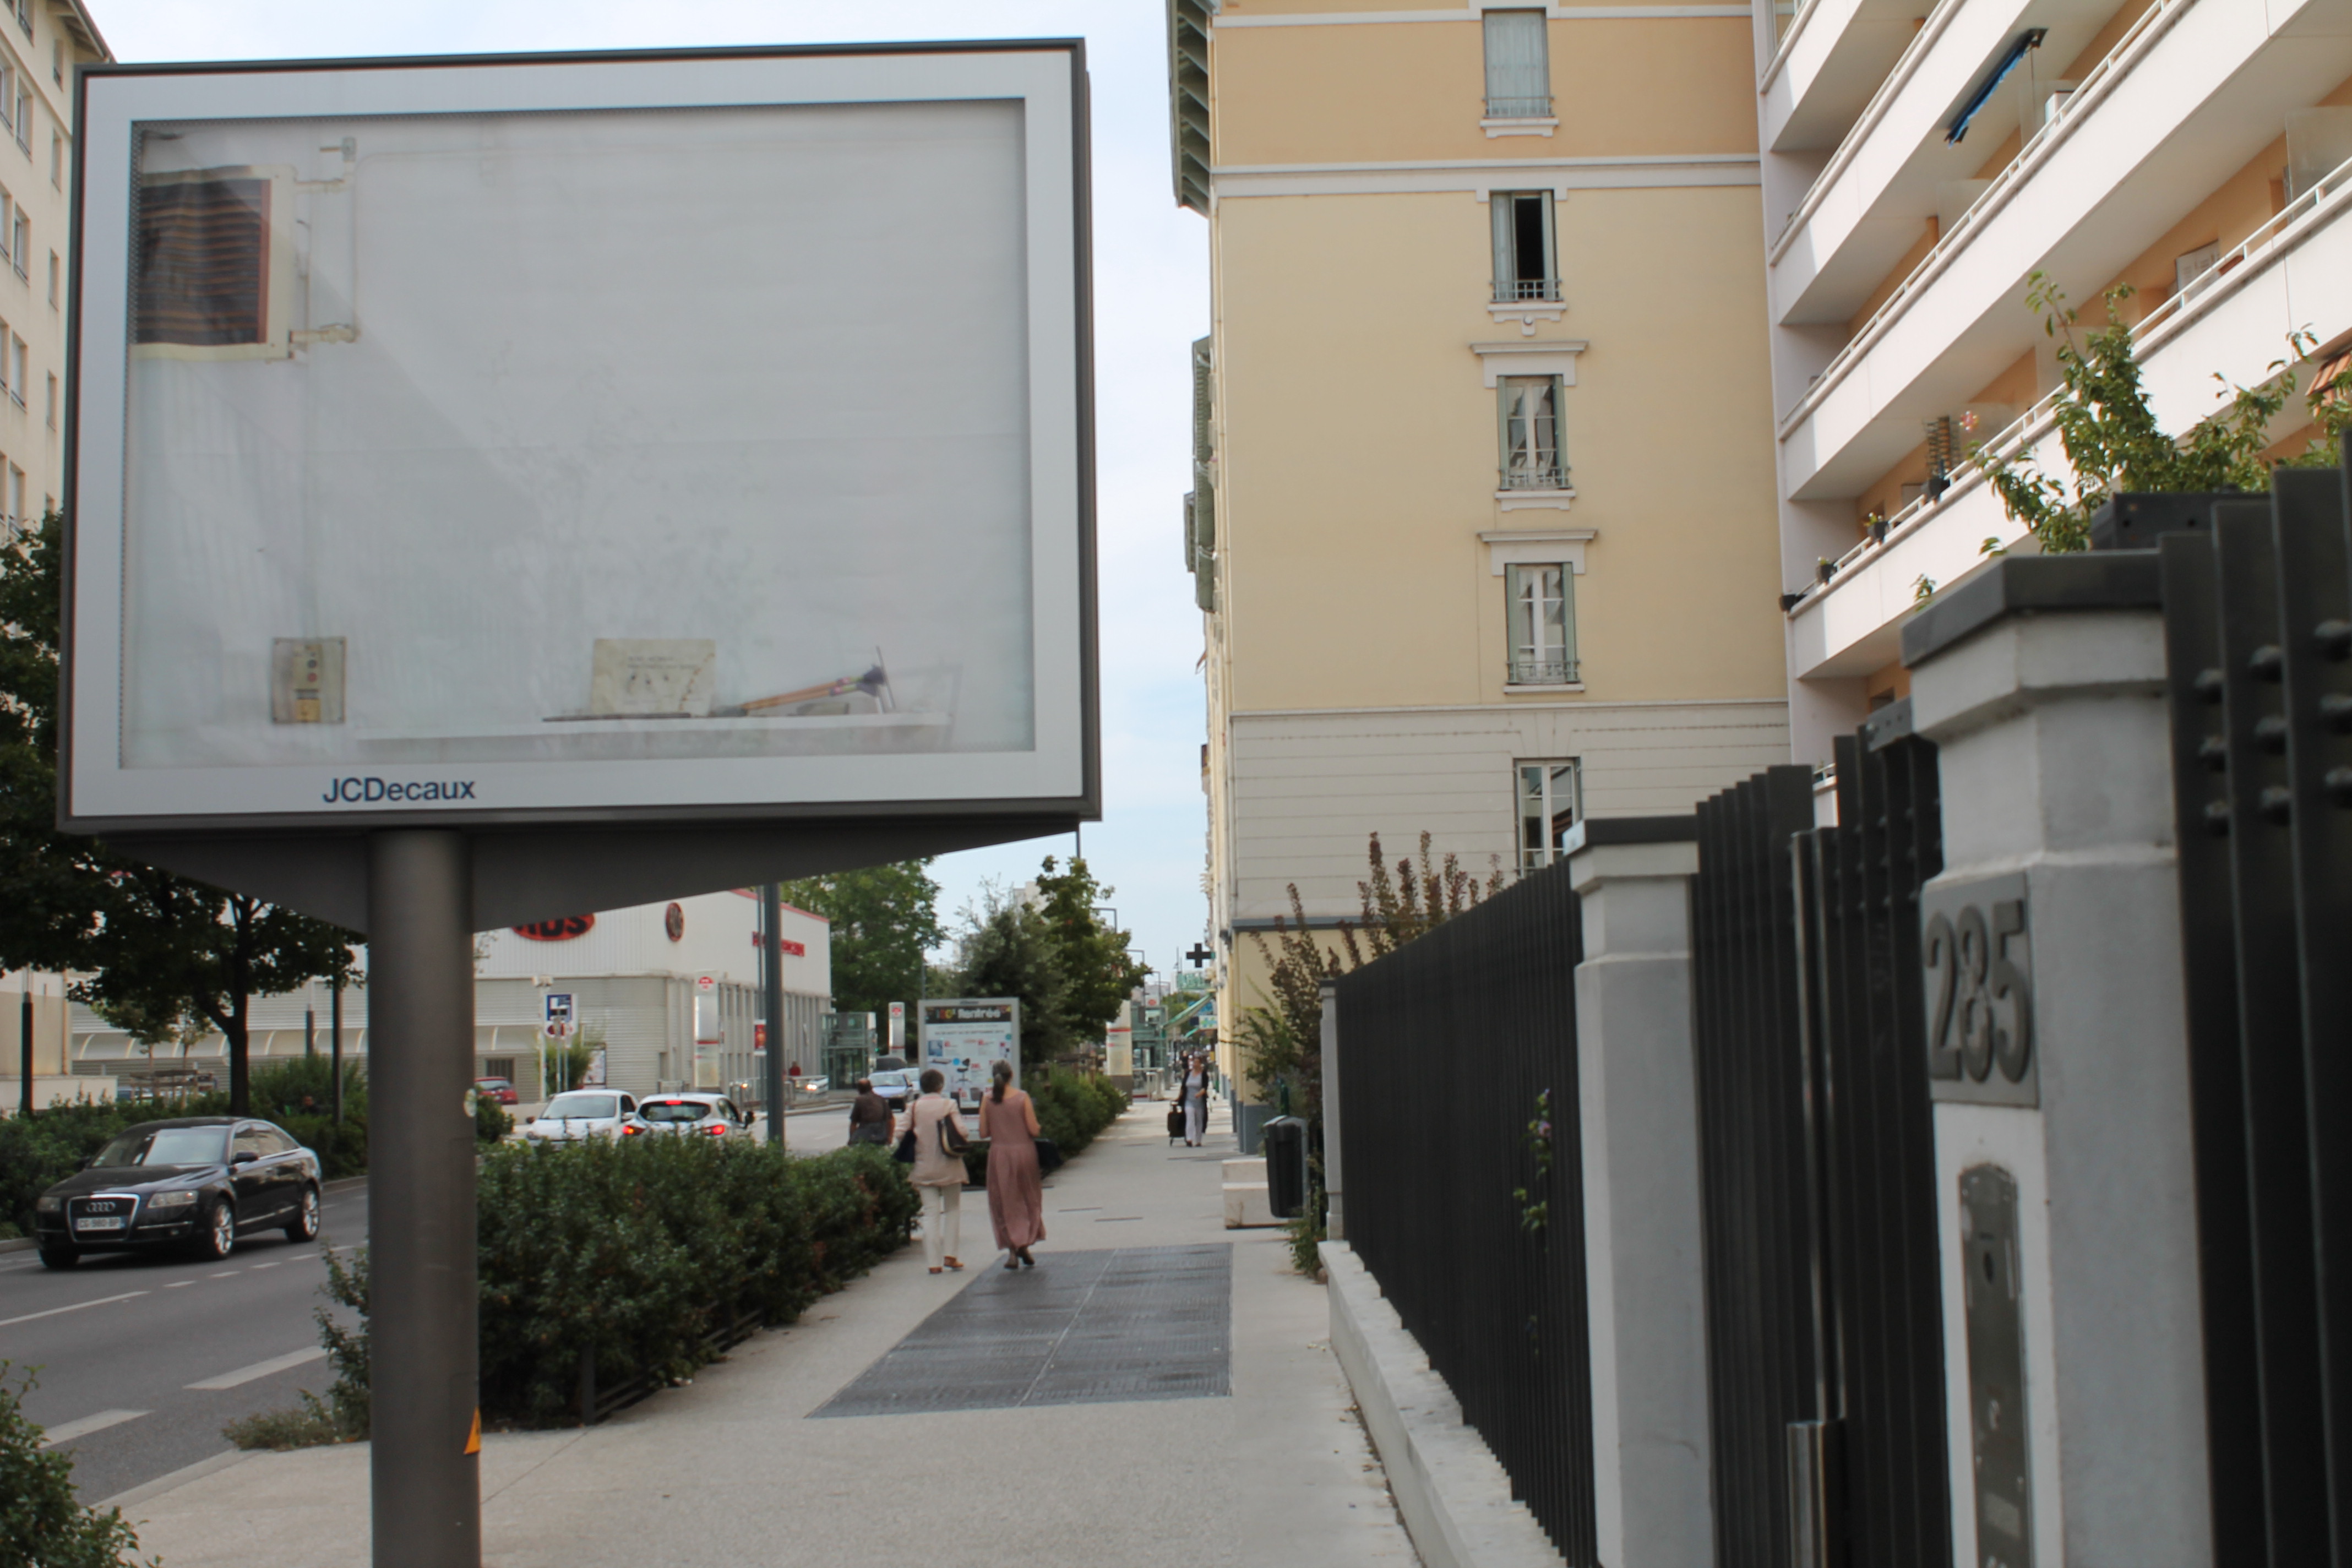 Campagne d'affichage Decaux, 240 x 320 cm, rue de Villeurbanne
Photographie : Cyrille Noirjean